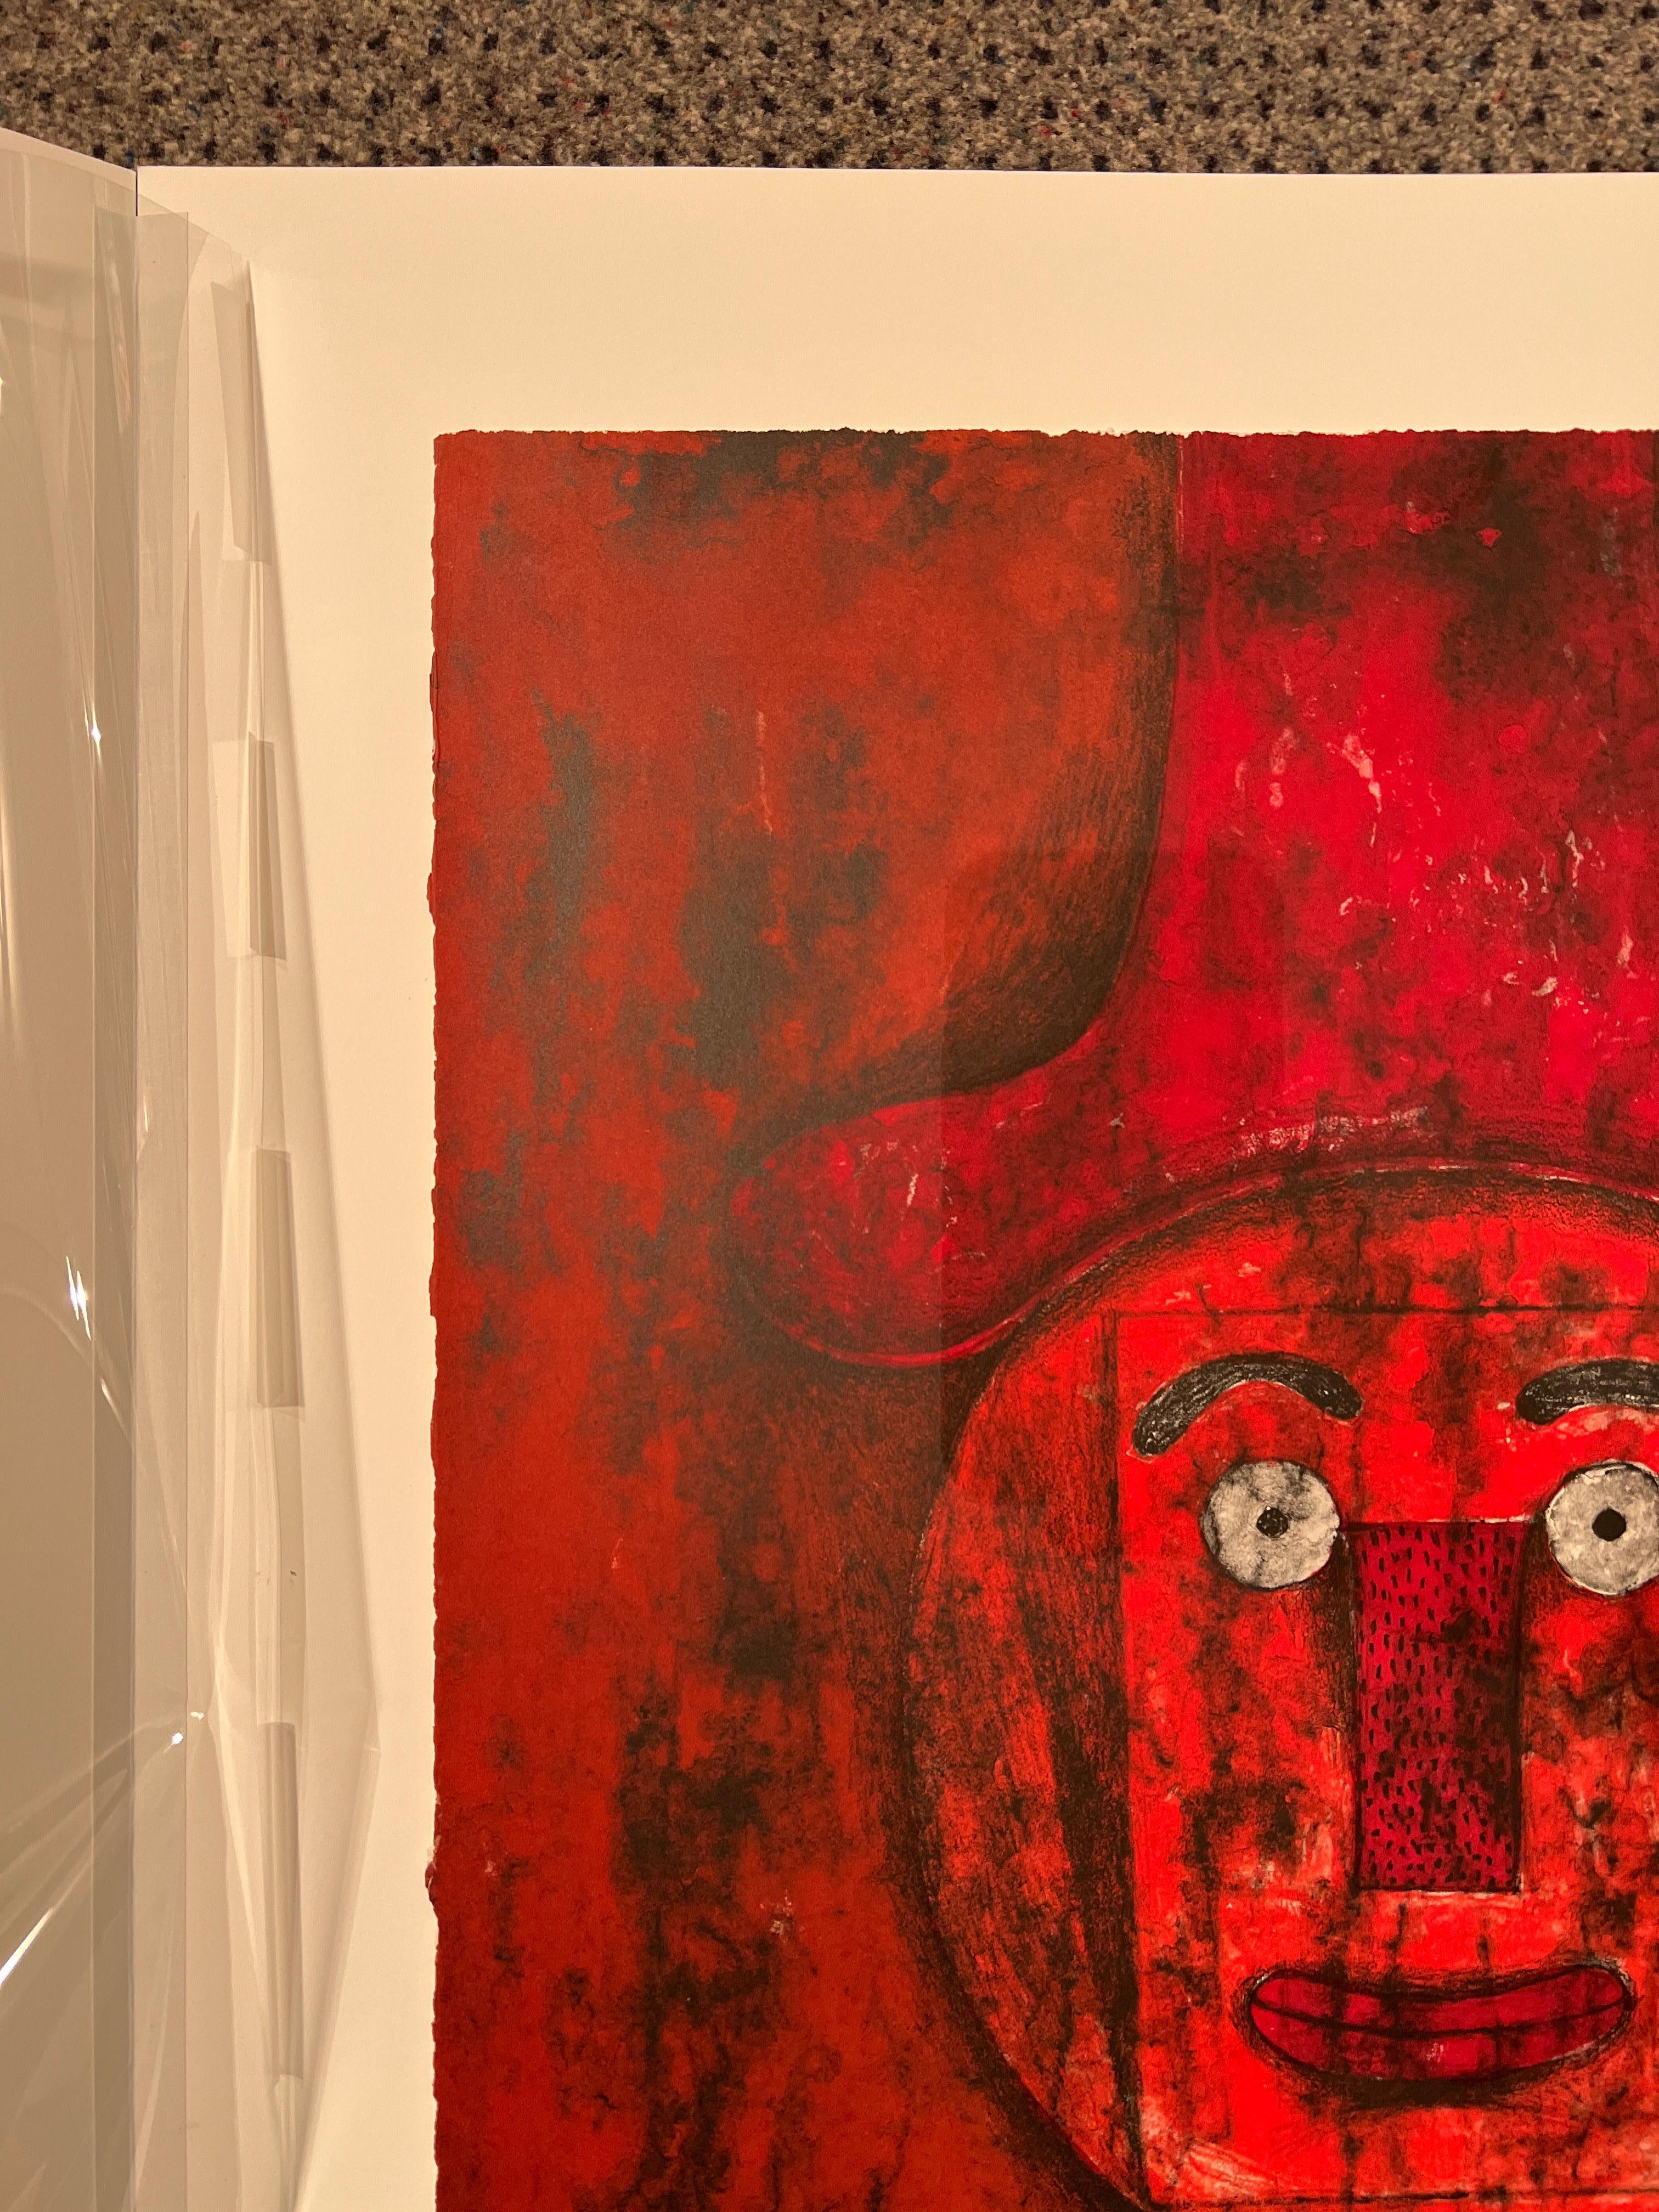 Cabeza Roja - Abstract Print by Rufino Tamayo